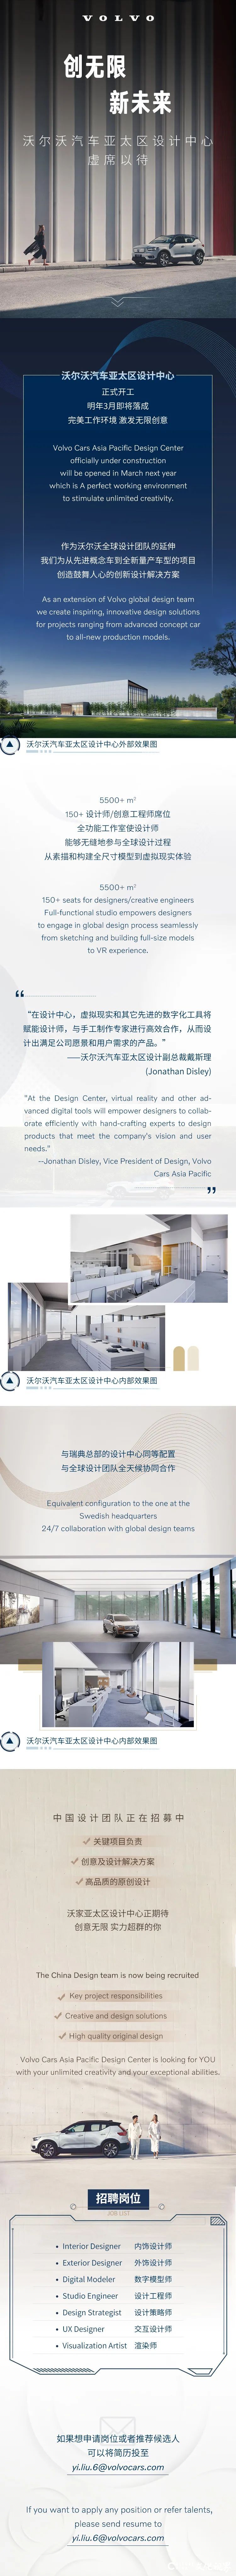 沃尔沃汽车亚太区设计中心正式开工，中国设计团队正在招募中